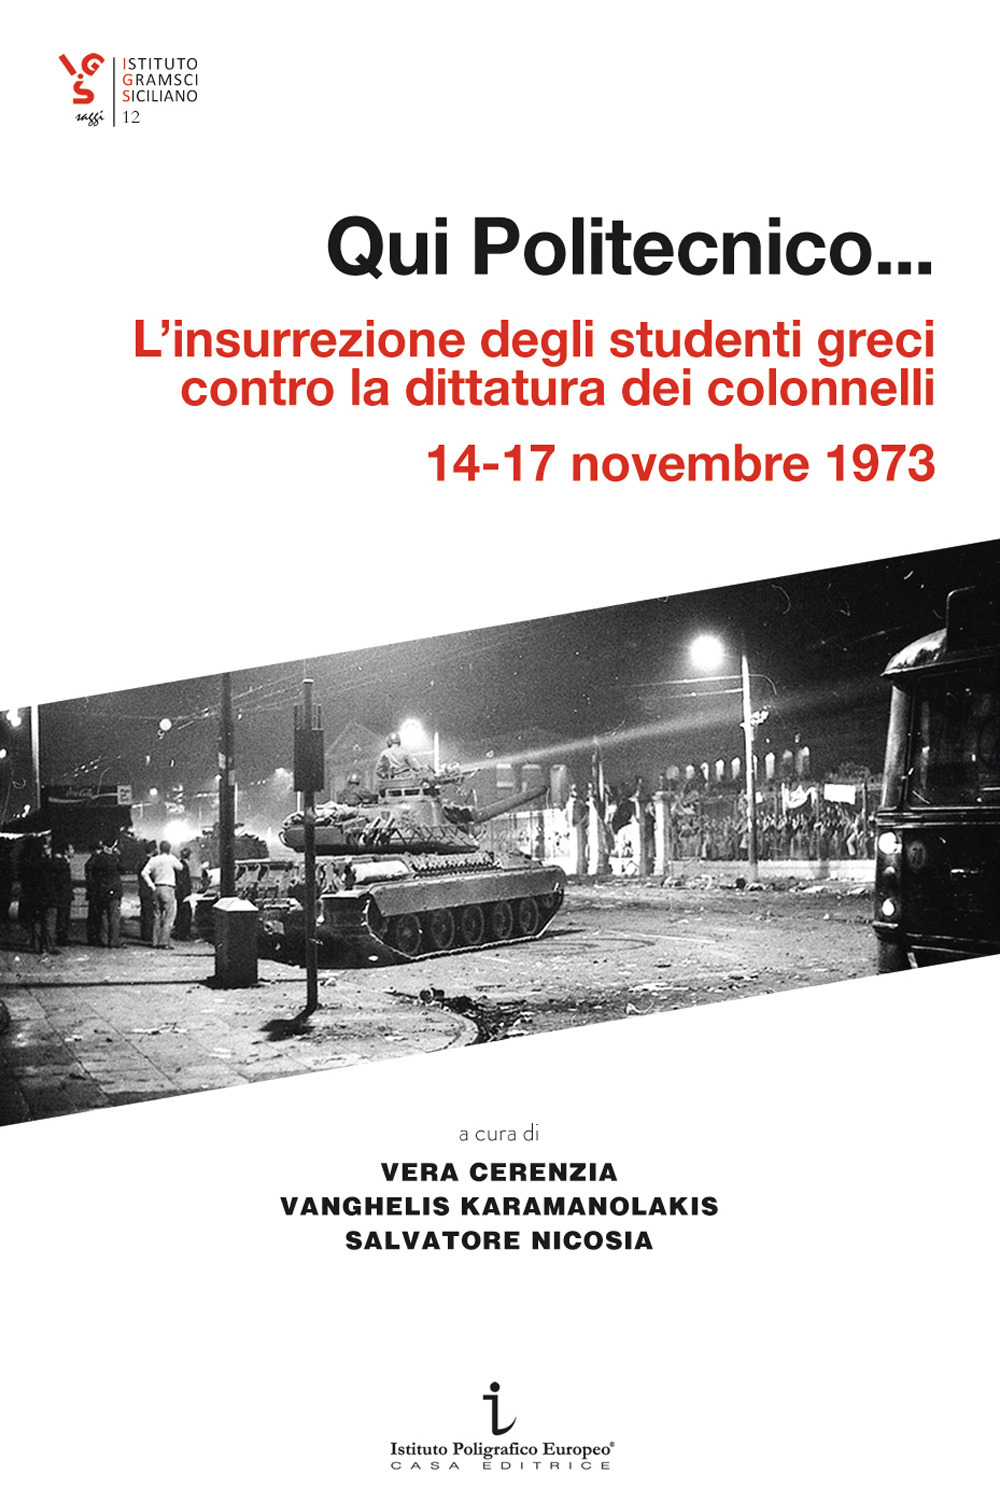 Qui Politecnico... L'insurrezione degli studenti greci contro la dittatura dei colonnelli, 14-17 novembre 1973